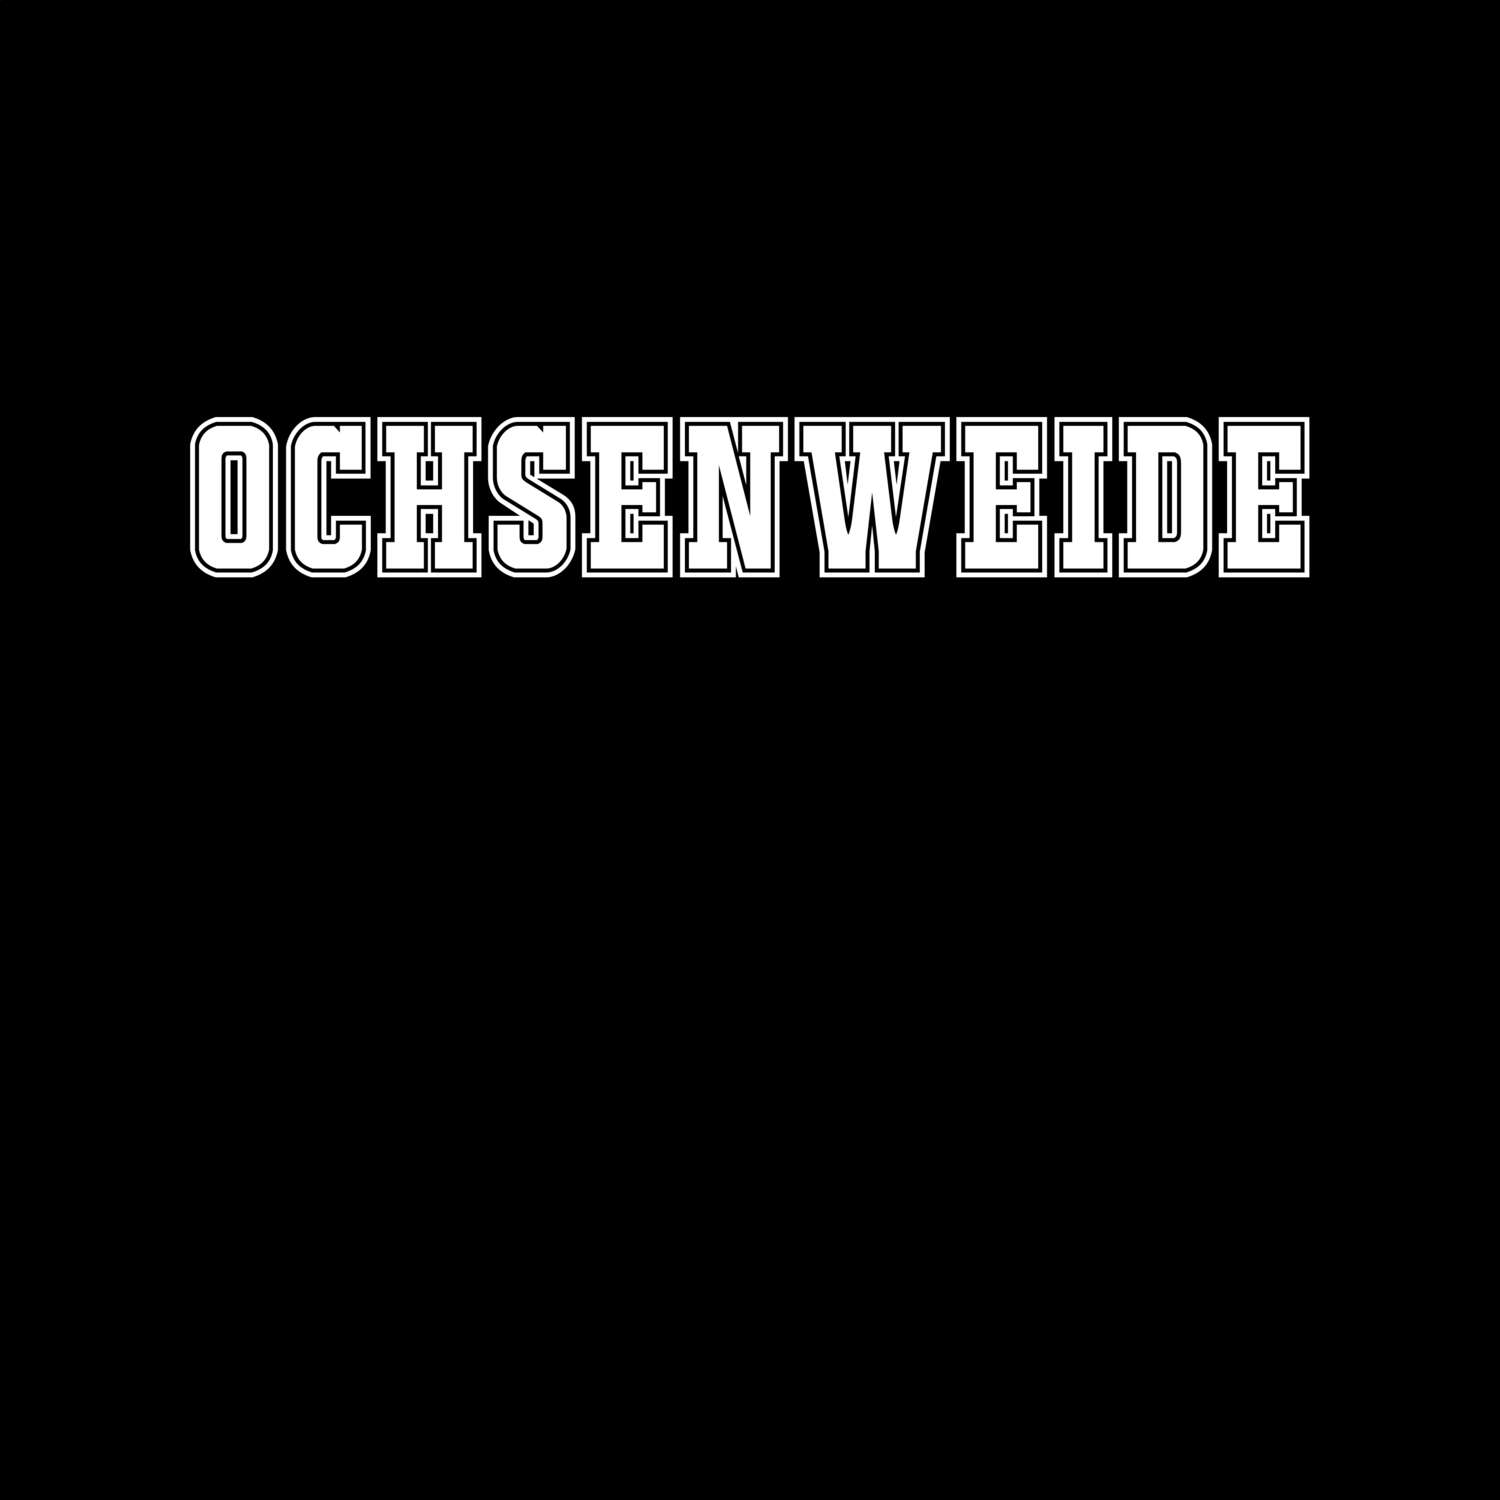 Ochsenweide T-Shirt »Classic«